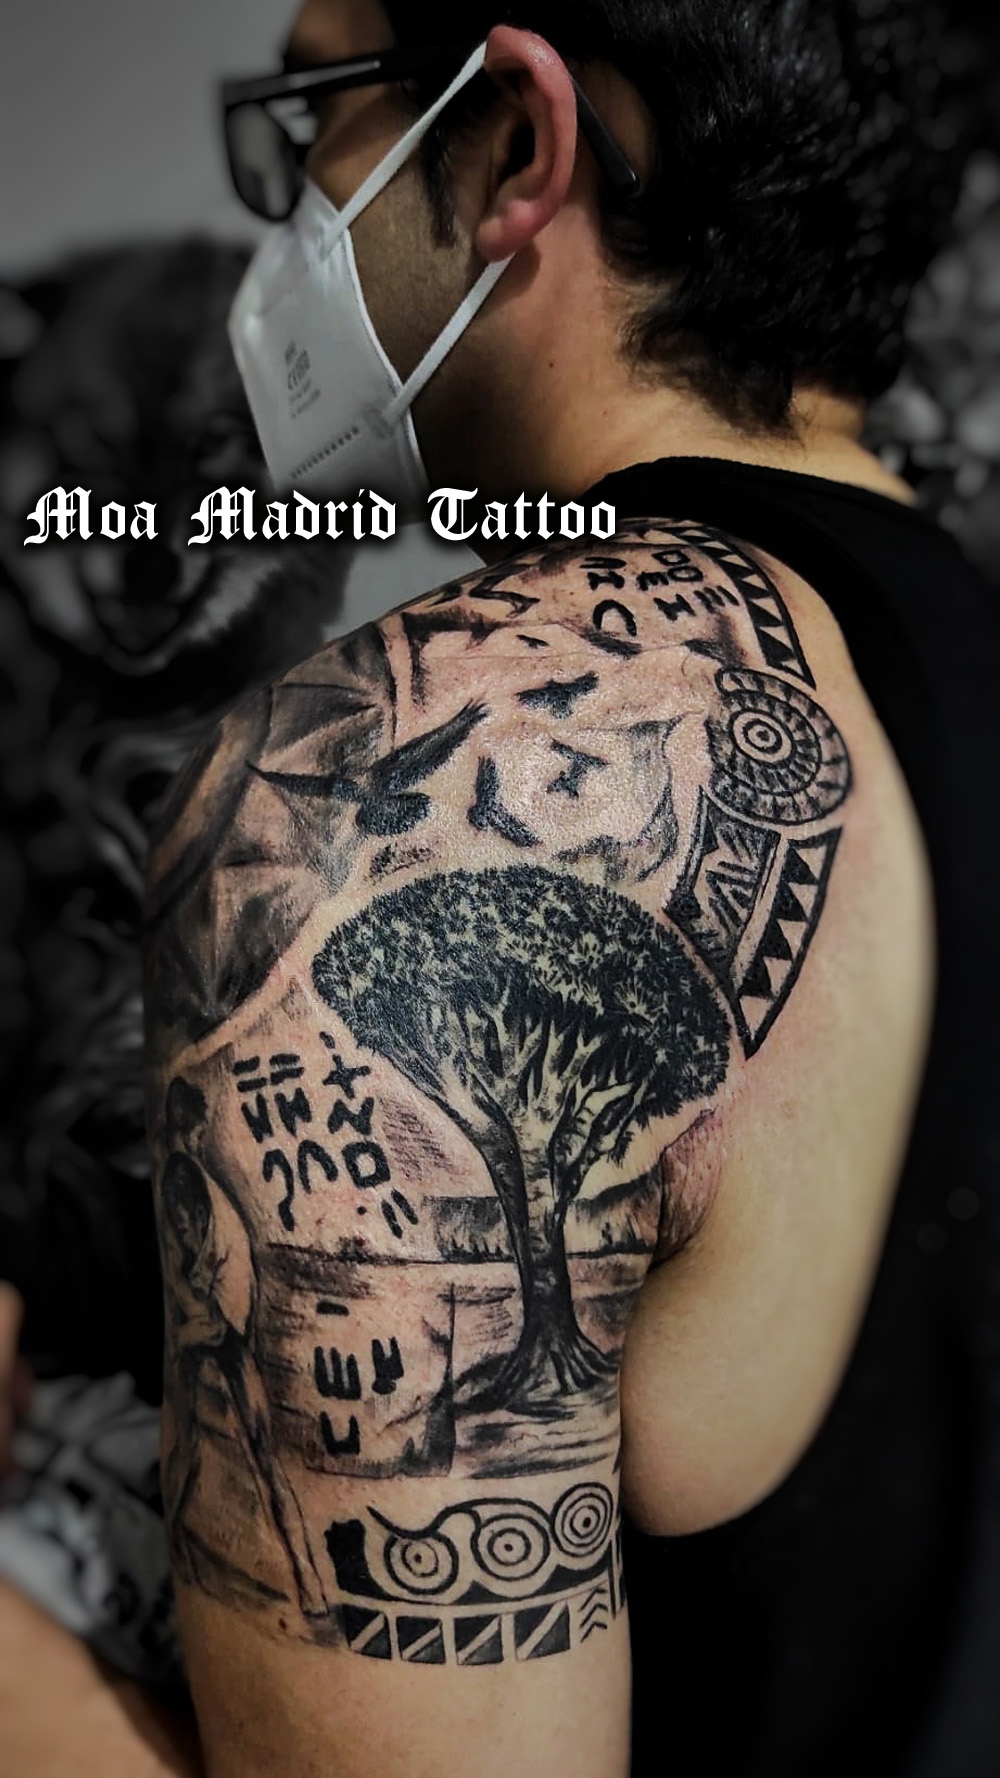 Tatuaje de drago canario, signos, escrituras y decoraciones originales de las islas en este tattoo en hombro y brazo